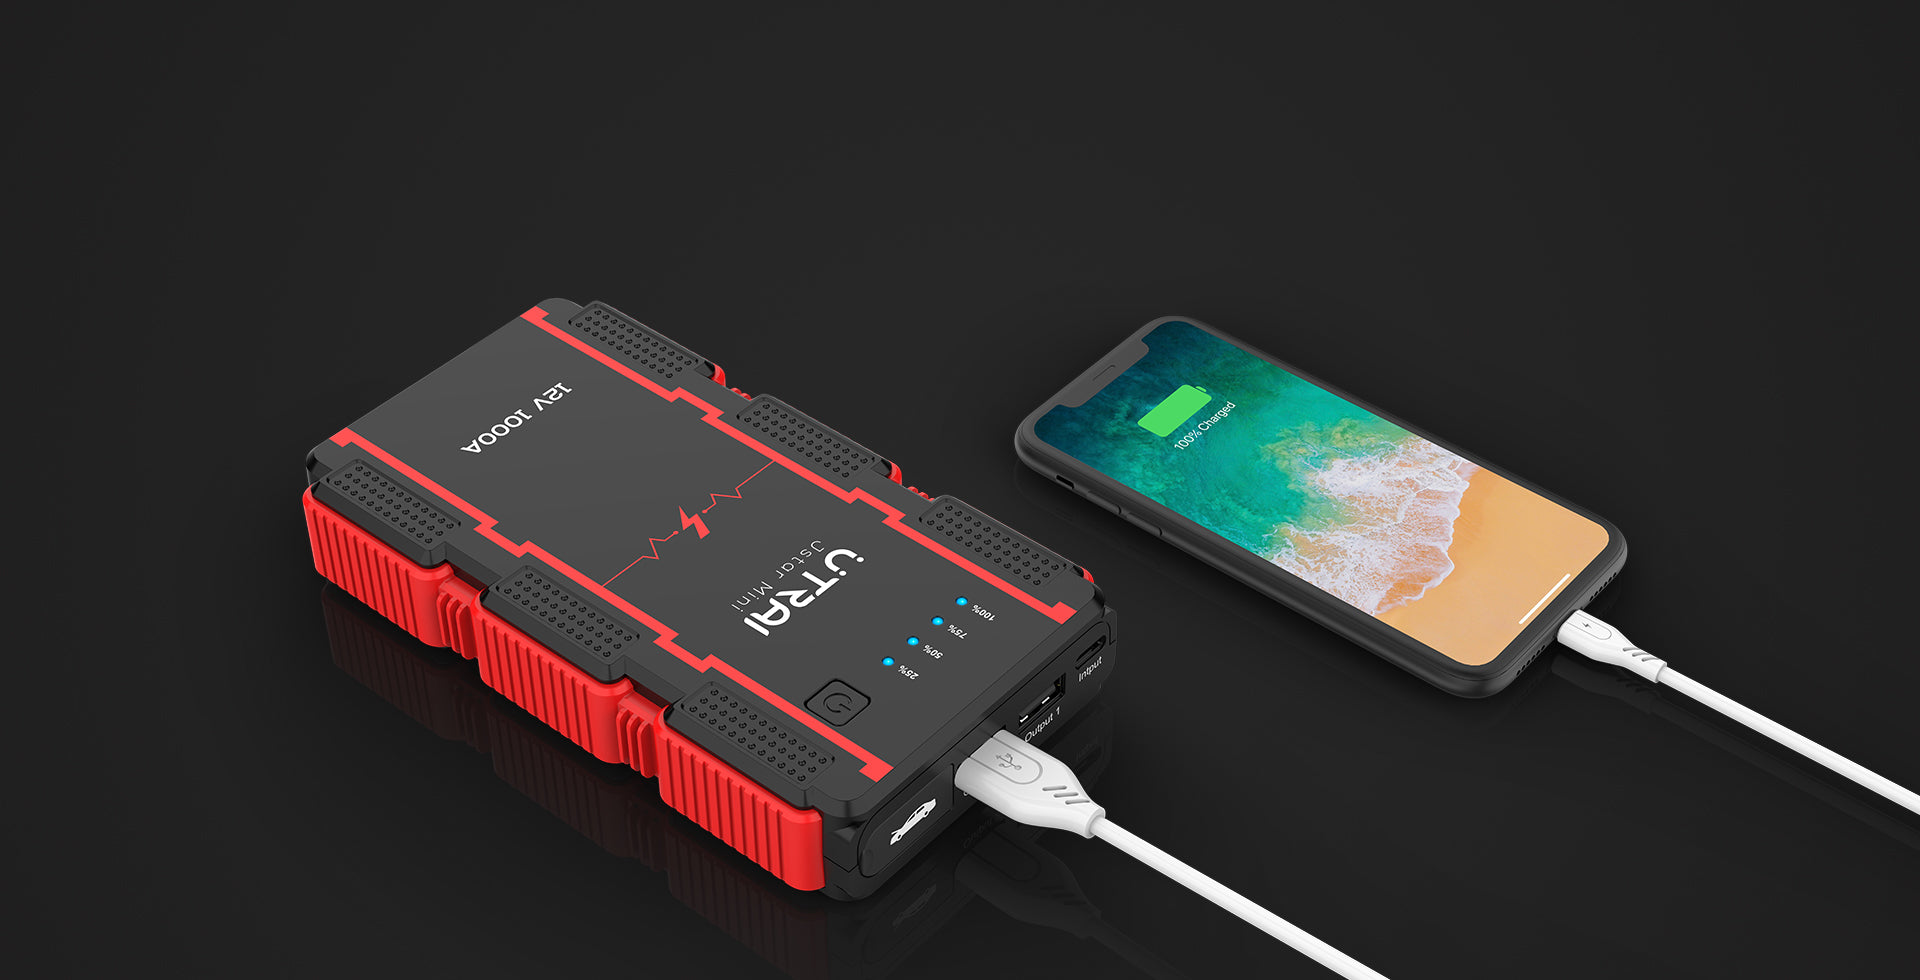 UTRAI Jstar Mini Booster Batterie Voiture Portable Jump Starter 1000A  Demarreur de Voiture Moto Smart Clip